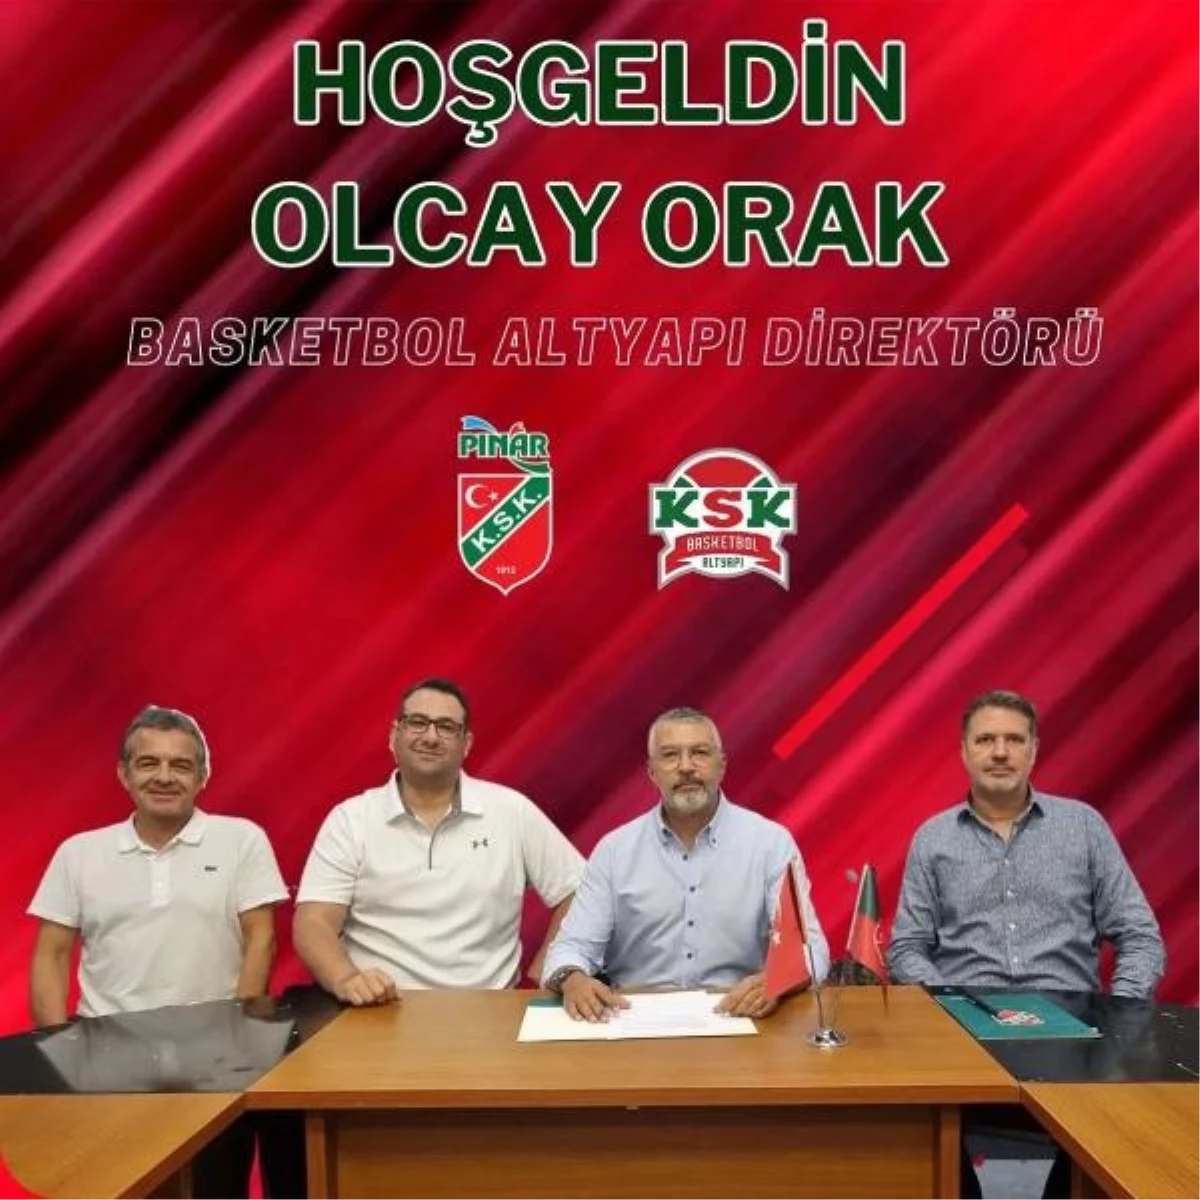 Karşıyaka Spor Kulübü Basketbol Altyapı Direktörlüğüne Olcay Orak getirildi